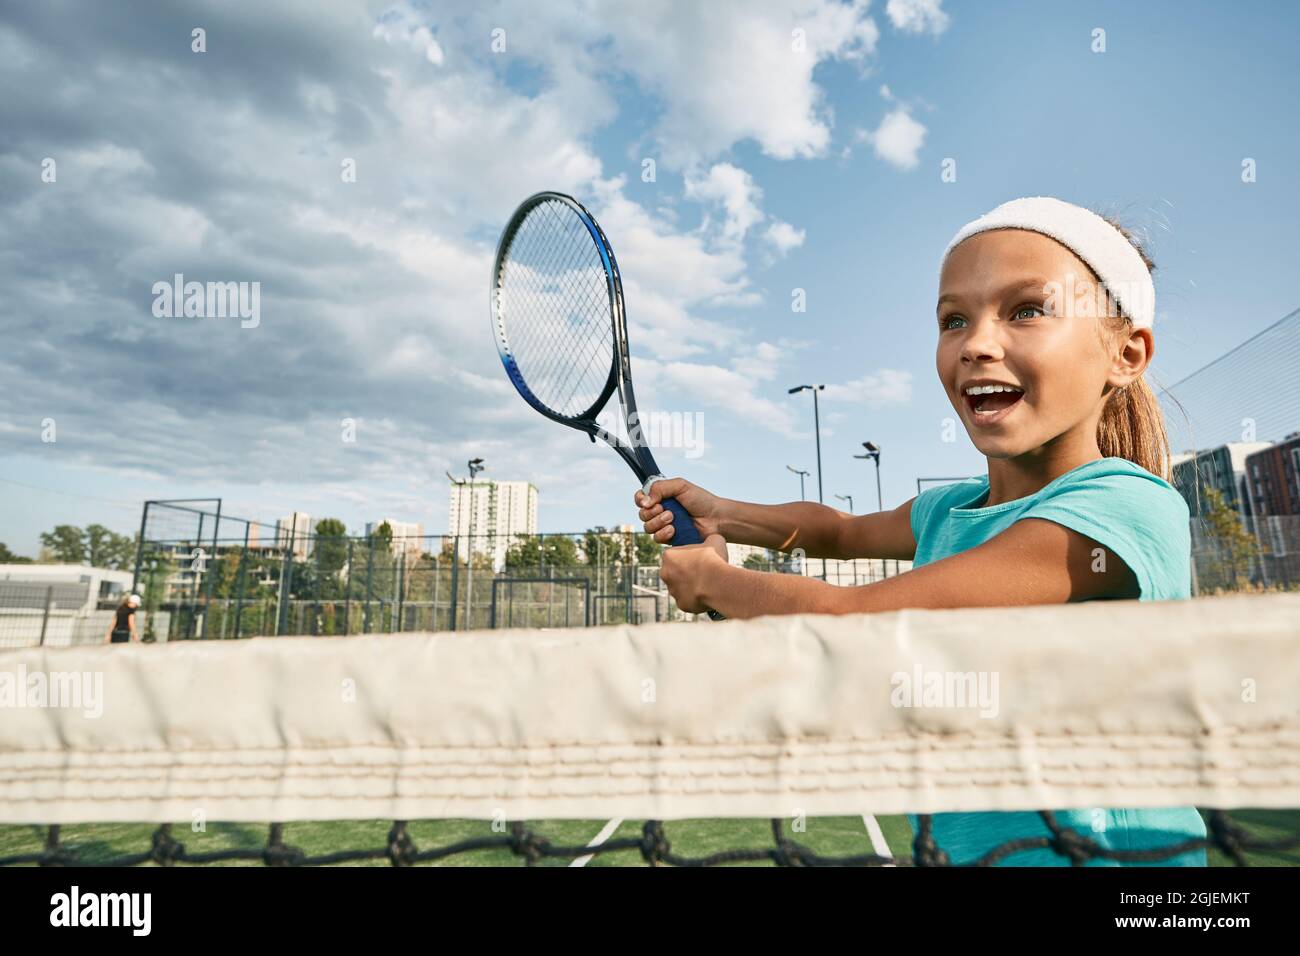 Hermosa mujer de tenis infantil jugando a mano alzada cerca de la red mientras que el partido de tenis en la cancha de la ciudad al aire libre, vista de ángulo bajo Foto de stock